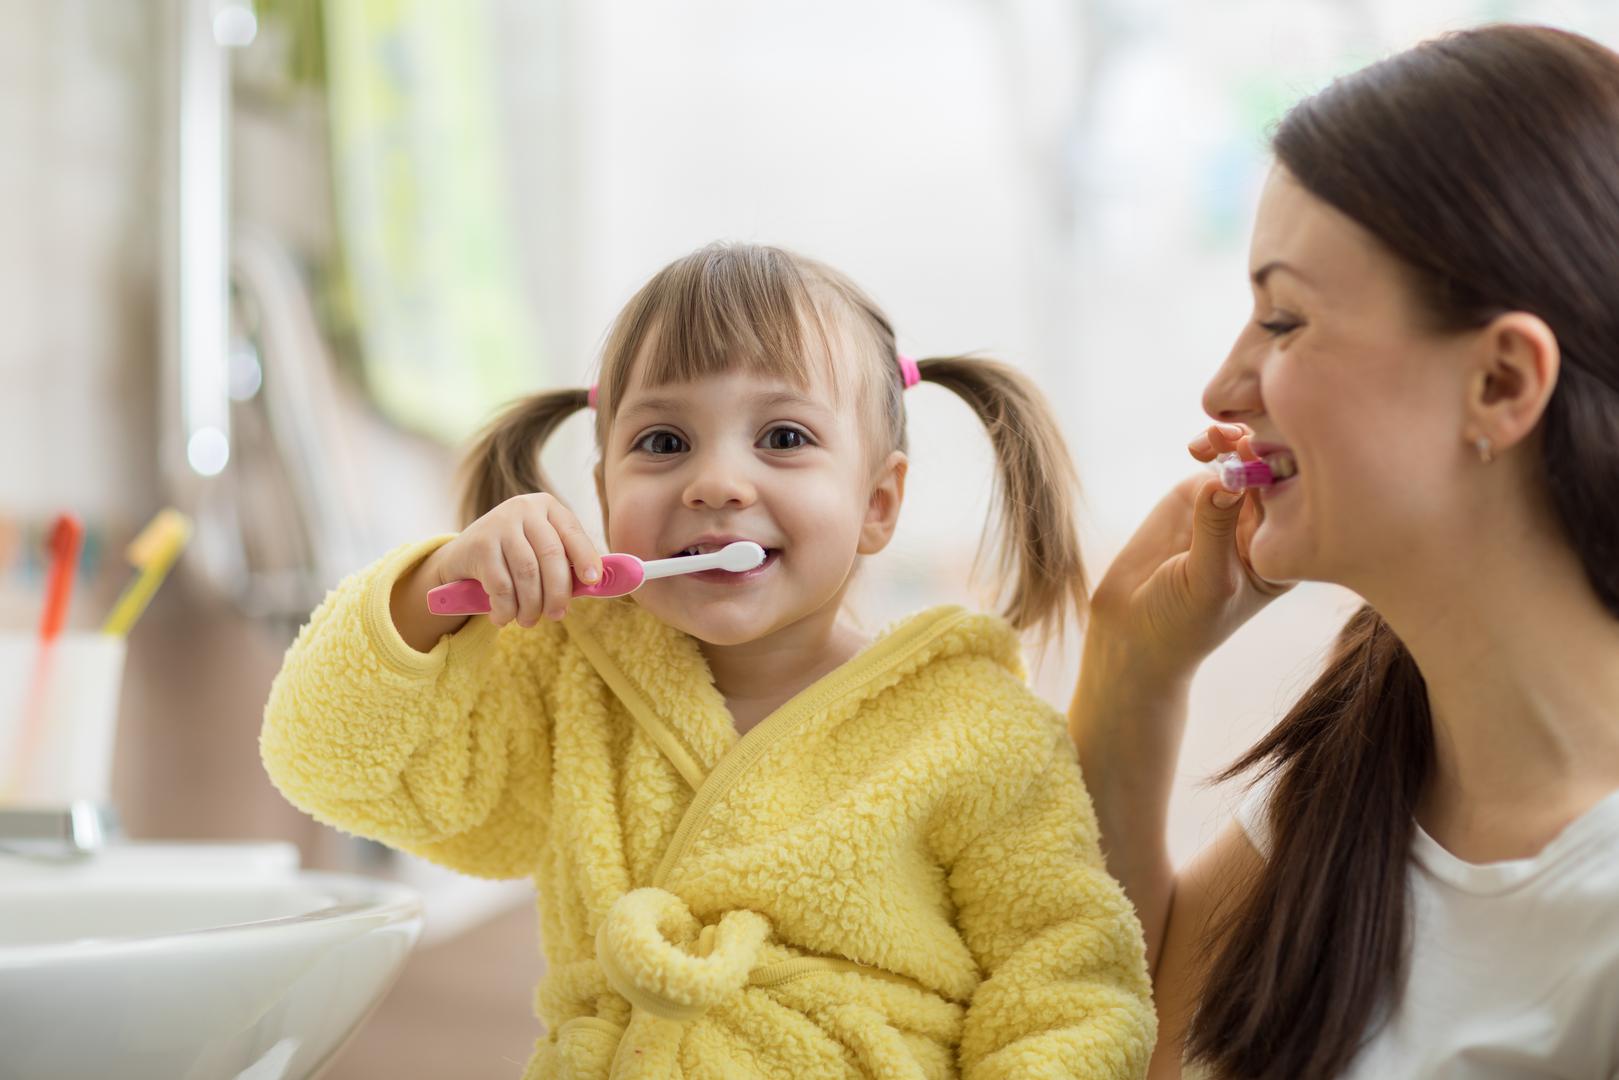 Pljujte, ne ispirite: 'Vaše bi dijete nakon četkanja trebalo pljunuti jer ne želite isprati fluorid', kaže dr. Jethwa. Ali, isperite vodom nakon obroka kako biste uklonili bakterije preostale na zubima. Dodaje: 'Ovo ne smije zamijeniti četkanje, ali može pomoći u održavanju dobre oralne higijene'.